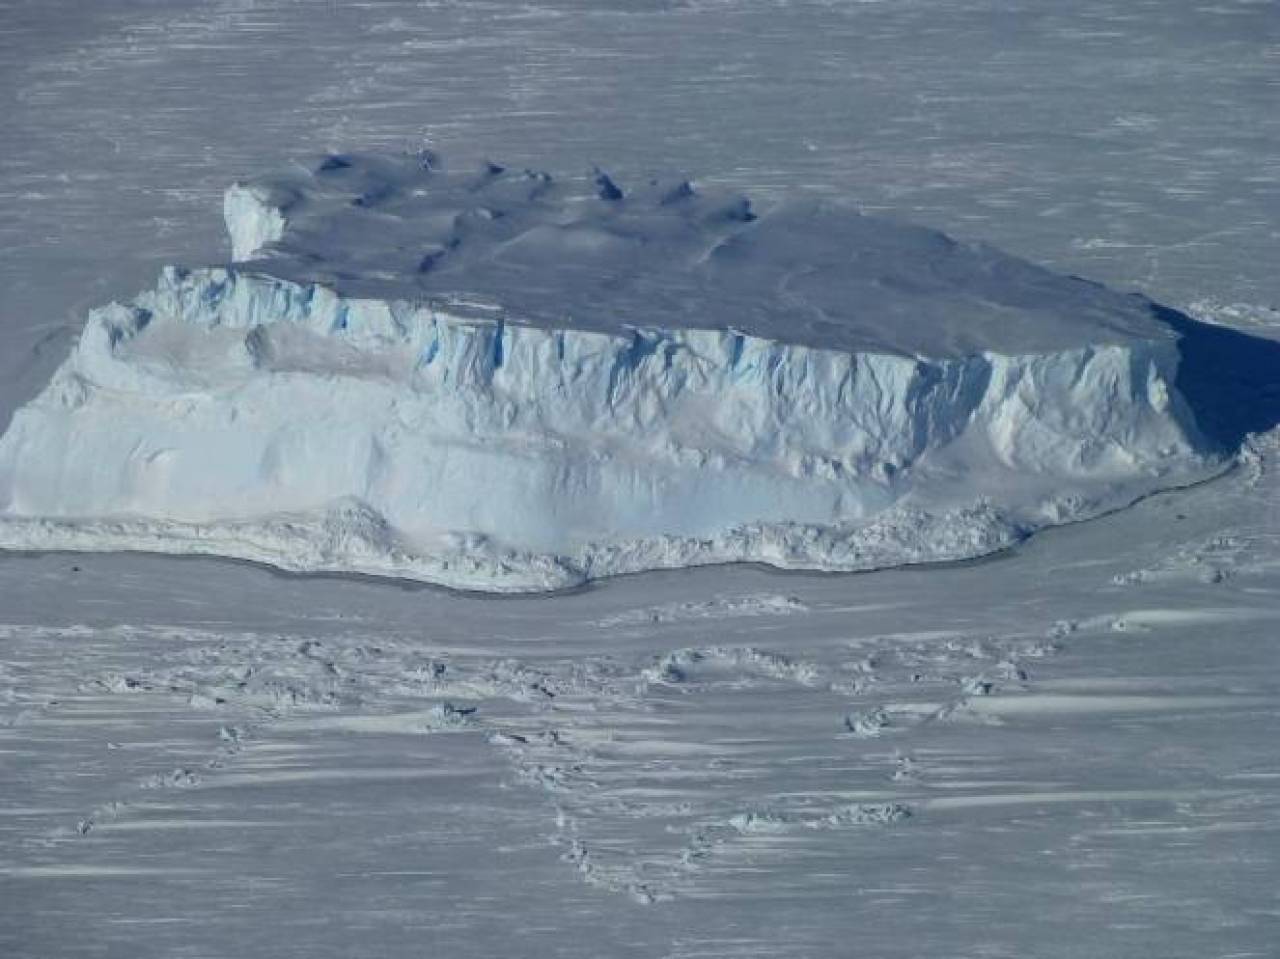 L'Antartide in un'immagine di archivio